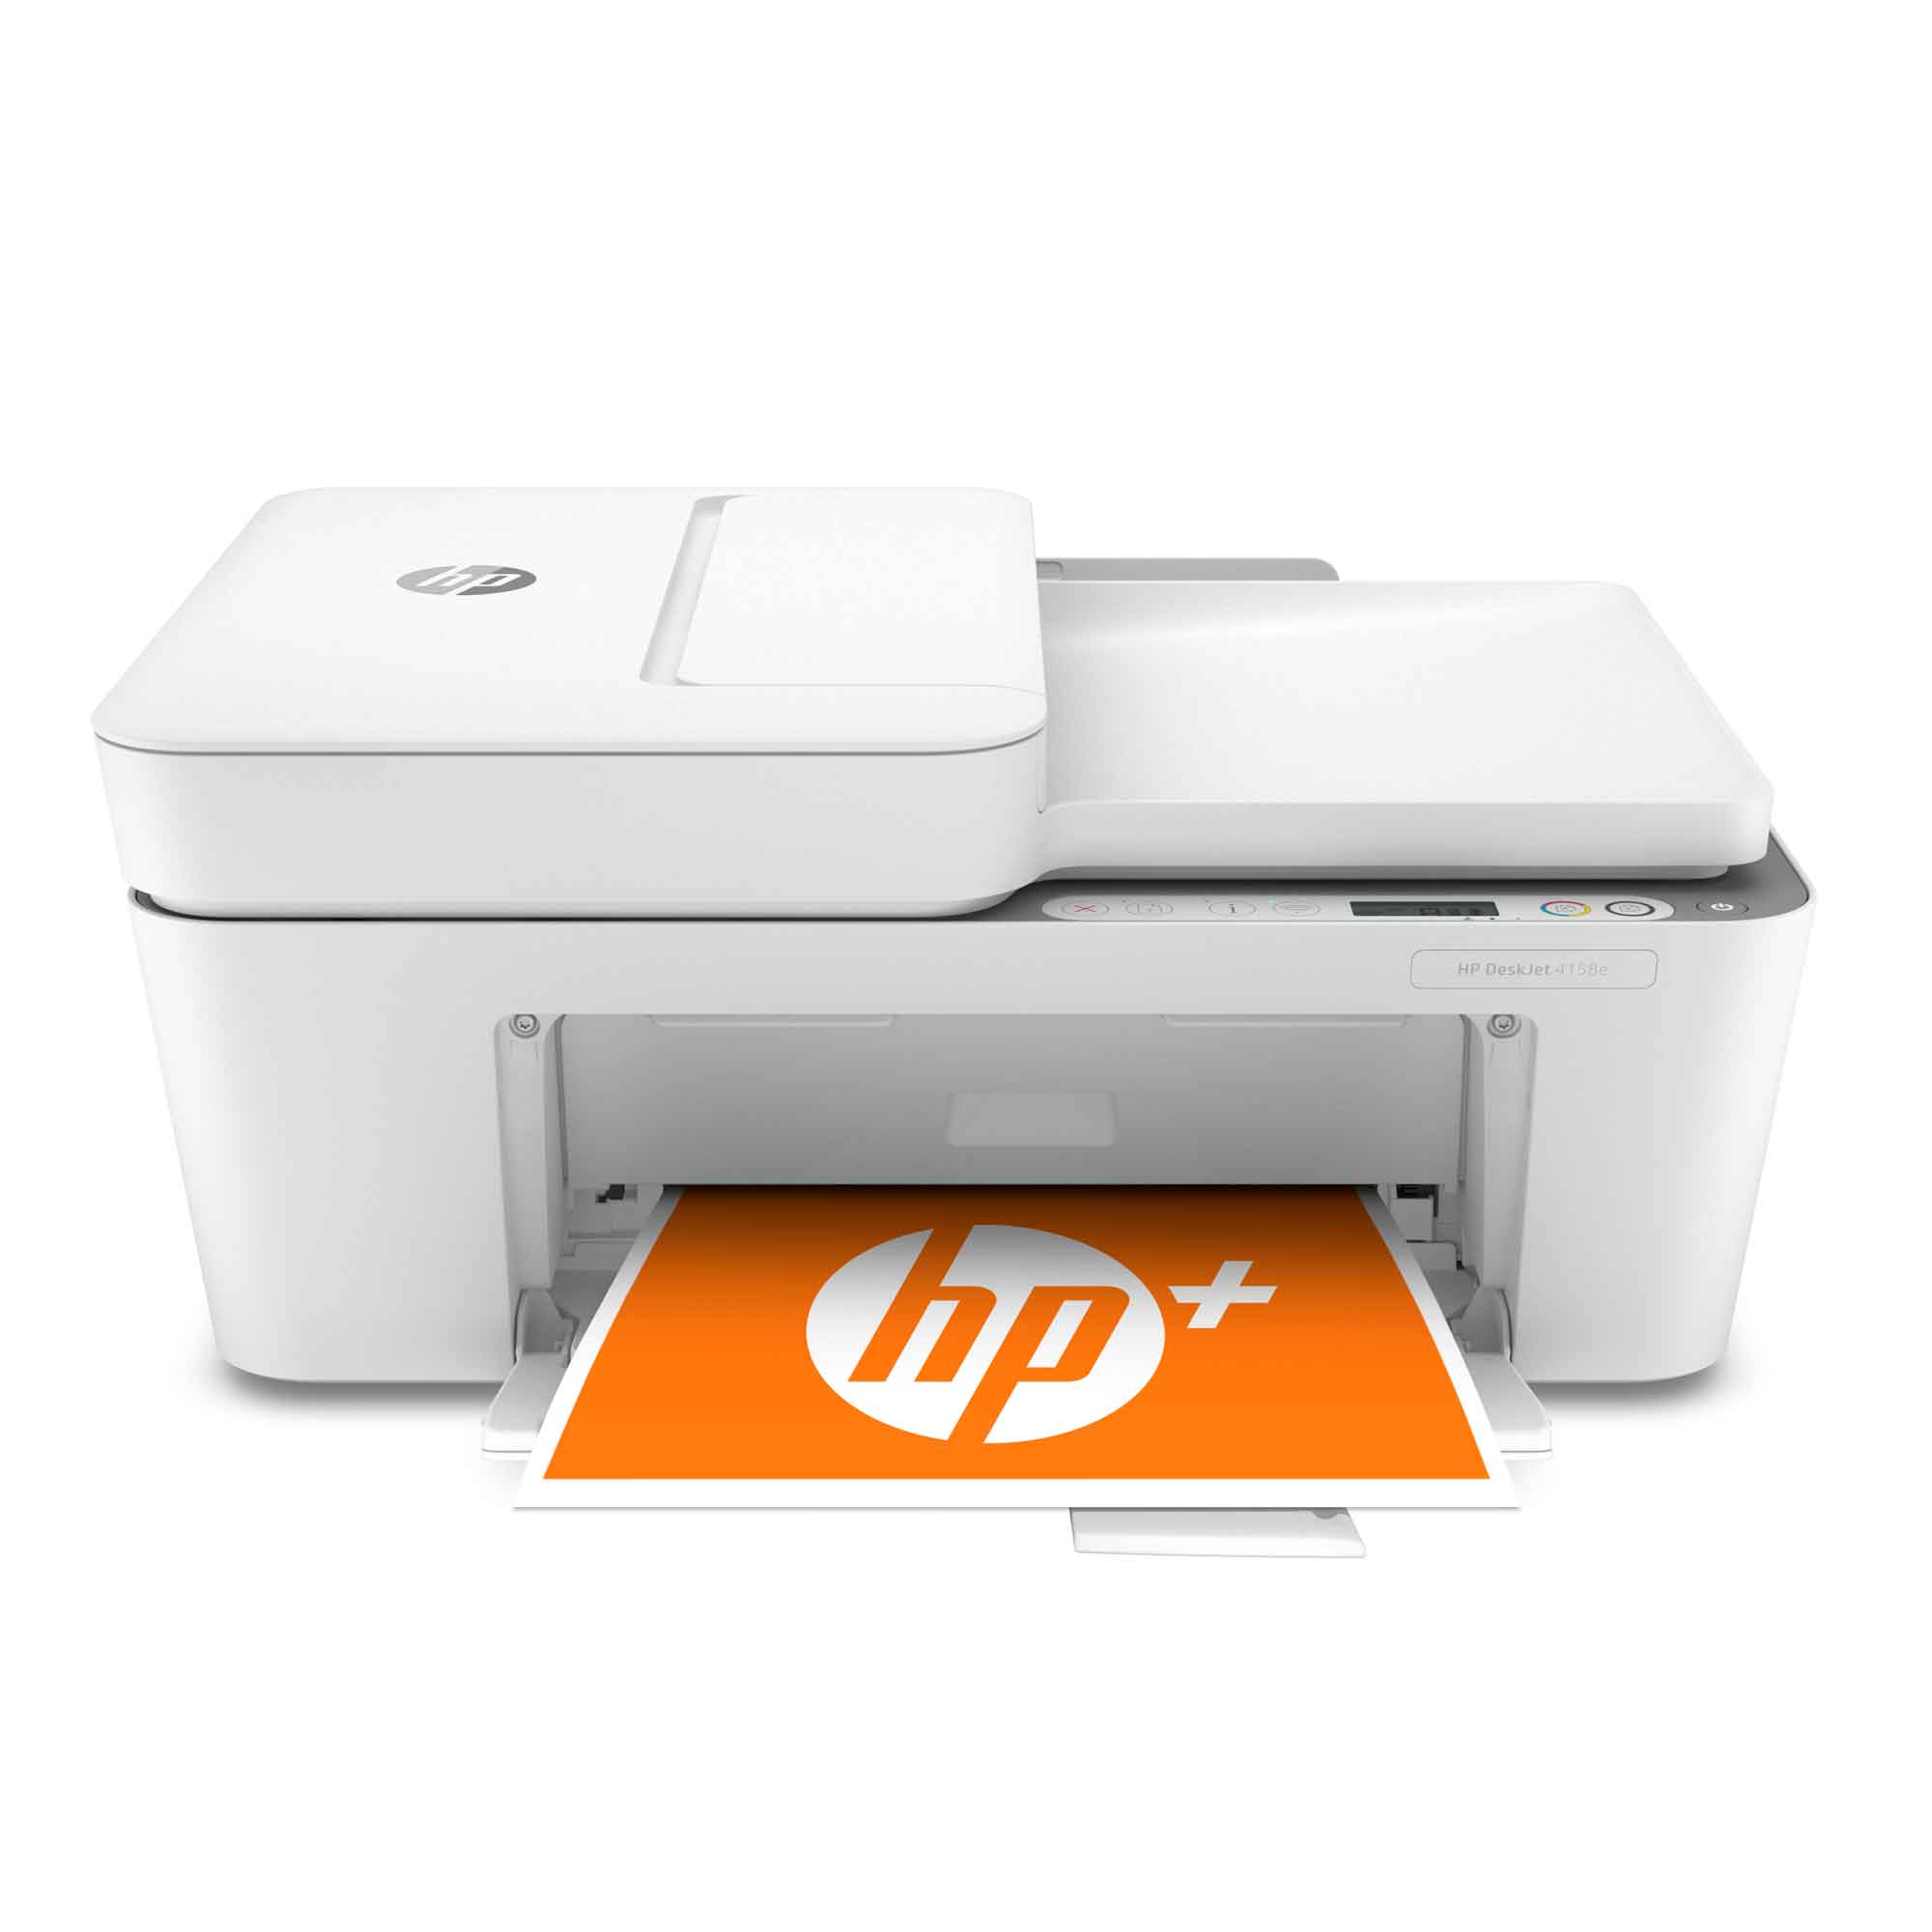 Instant Ink Ready HP DeskJet Plus 4158 All-in-One Wireless Printer Scan Renewed 7FS76A Copy 